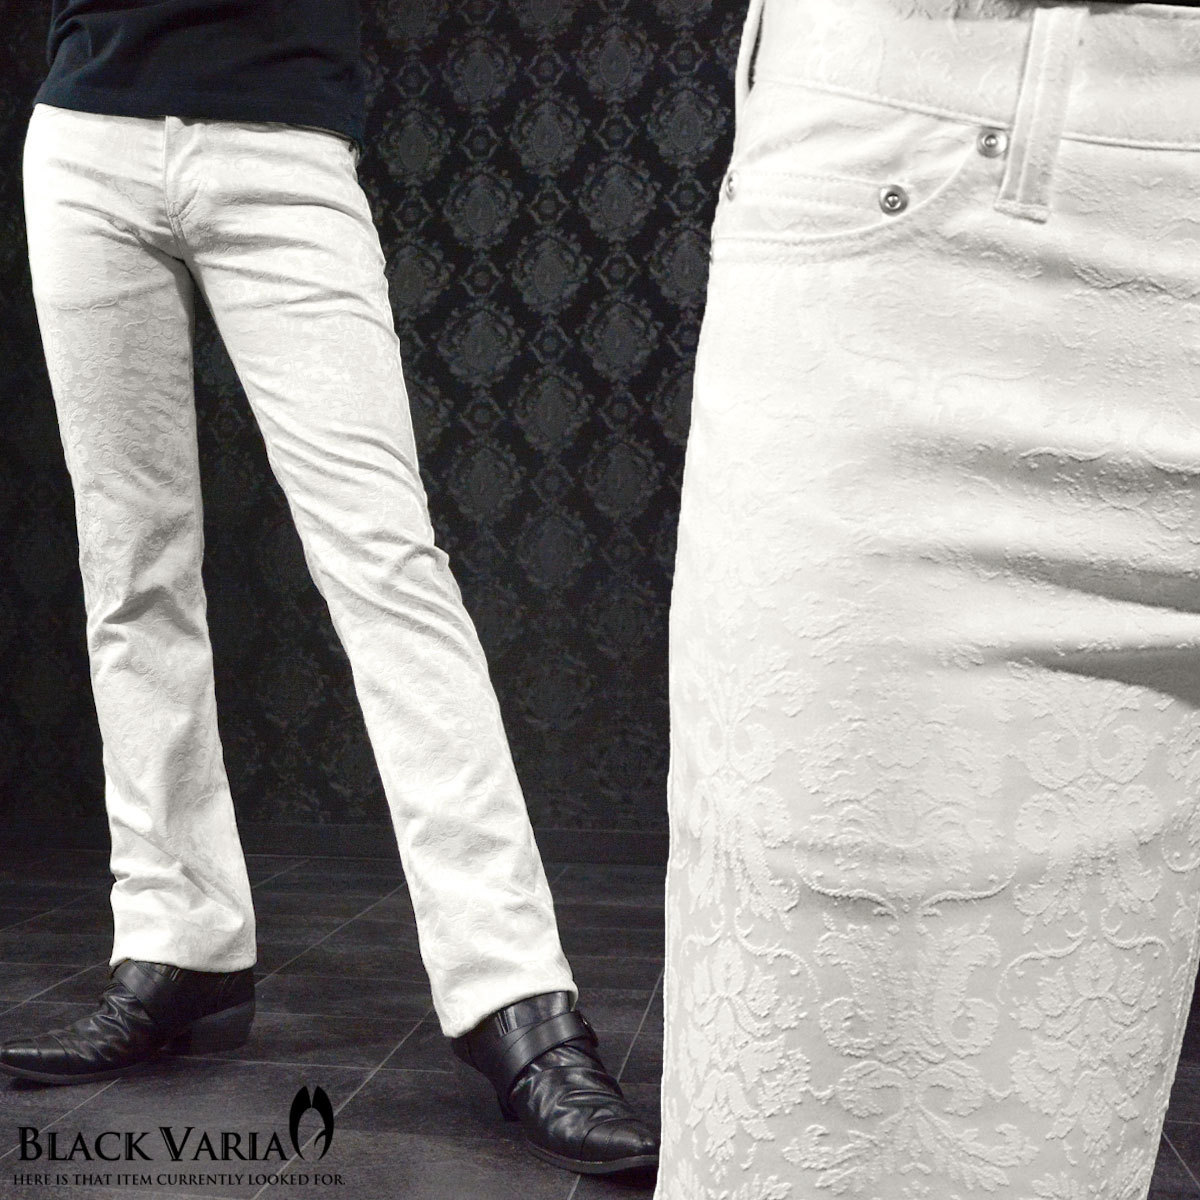 正規品販売! アラベスク柄 VARIA BLACK 0#181250-wh ジャガード ホスト 日本製 きれいめ M30 メンズ(ホワイト白) ブーツカットパンツ スリム ストレッチ Mサイズ